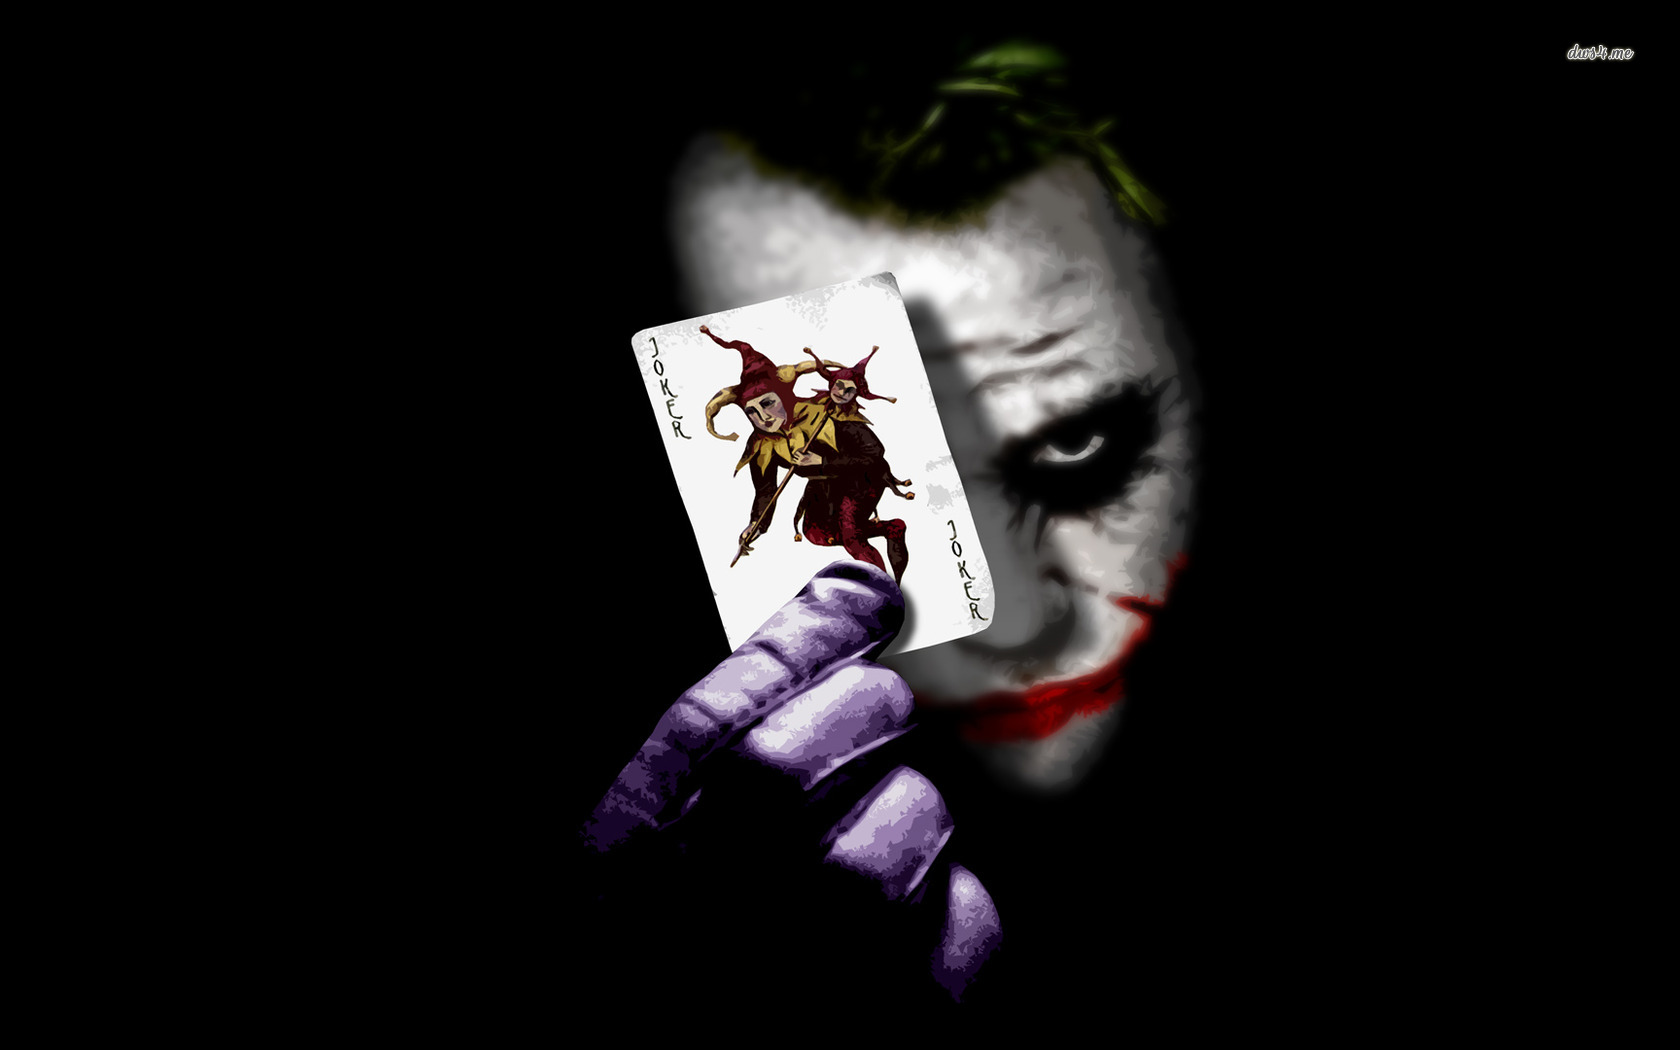 Joker The Dark Knight wallpaper Movie wallpapers 12433